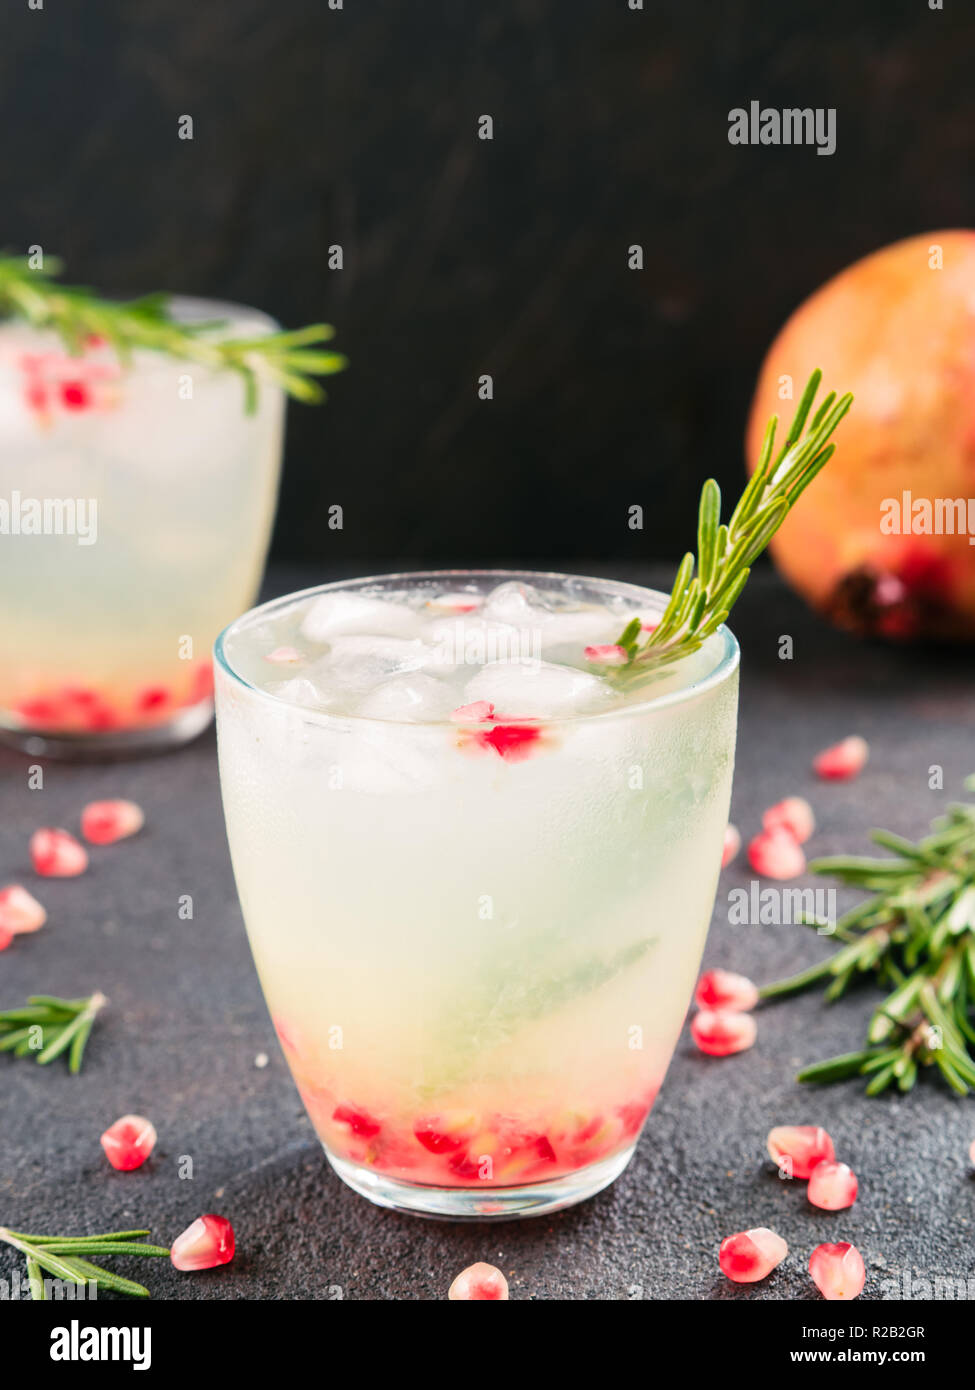 Herbst und Winter cocktails Idee - weiße Sangria mit Rosmarin, pomegrante und Zitronensaft und Zutaten auf schwarzem Zement Hintergrund. Stockfoto